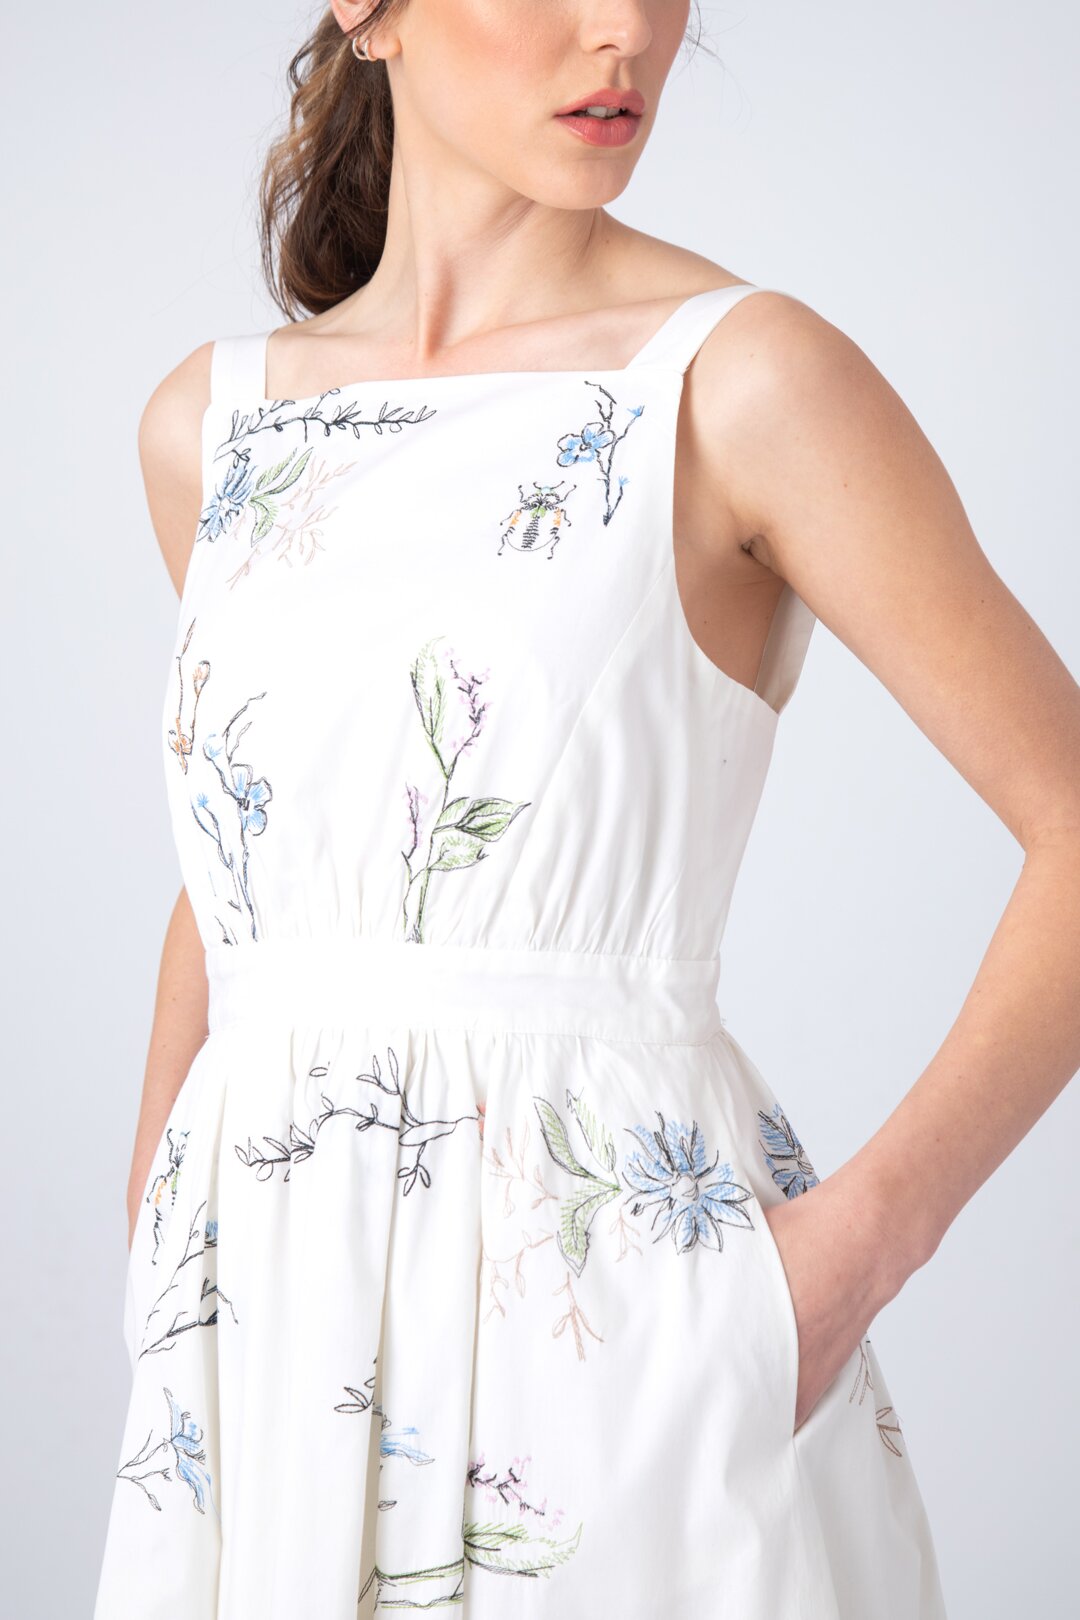 Embroidered Dress, Herbarium Motif